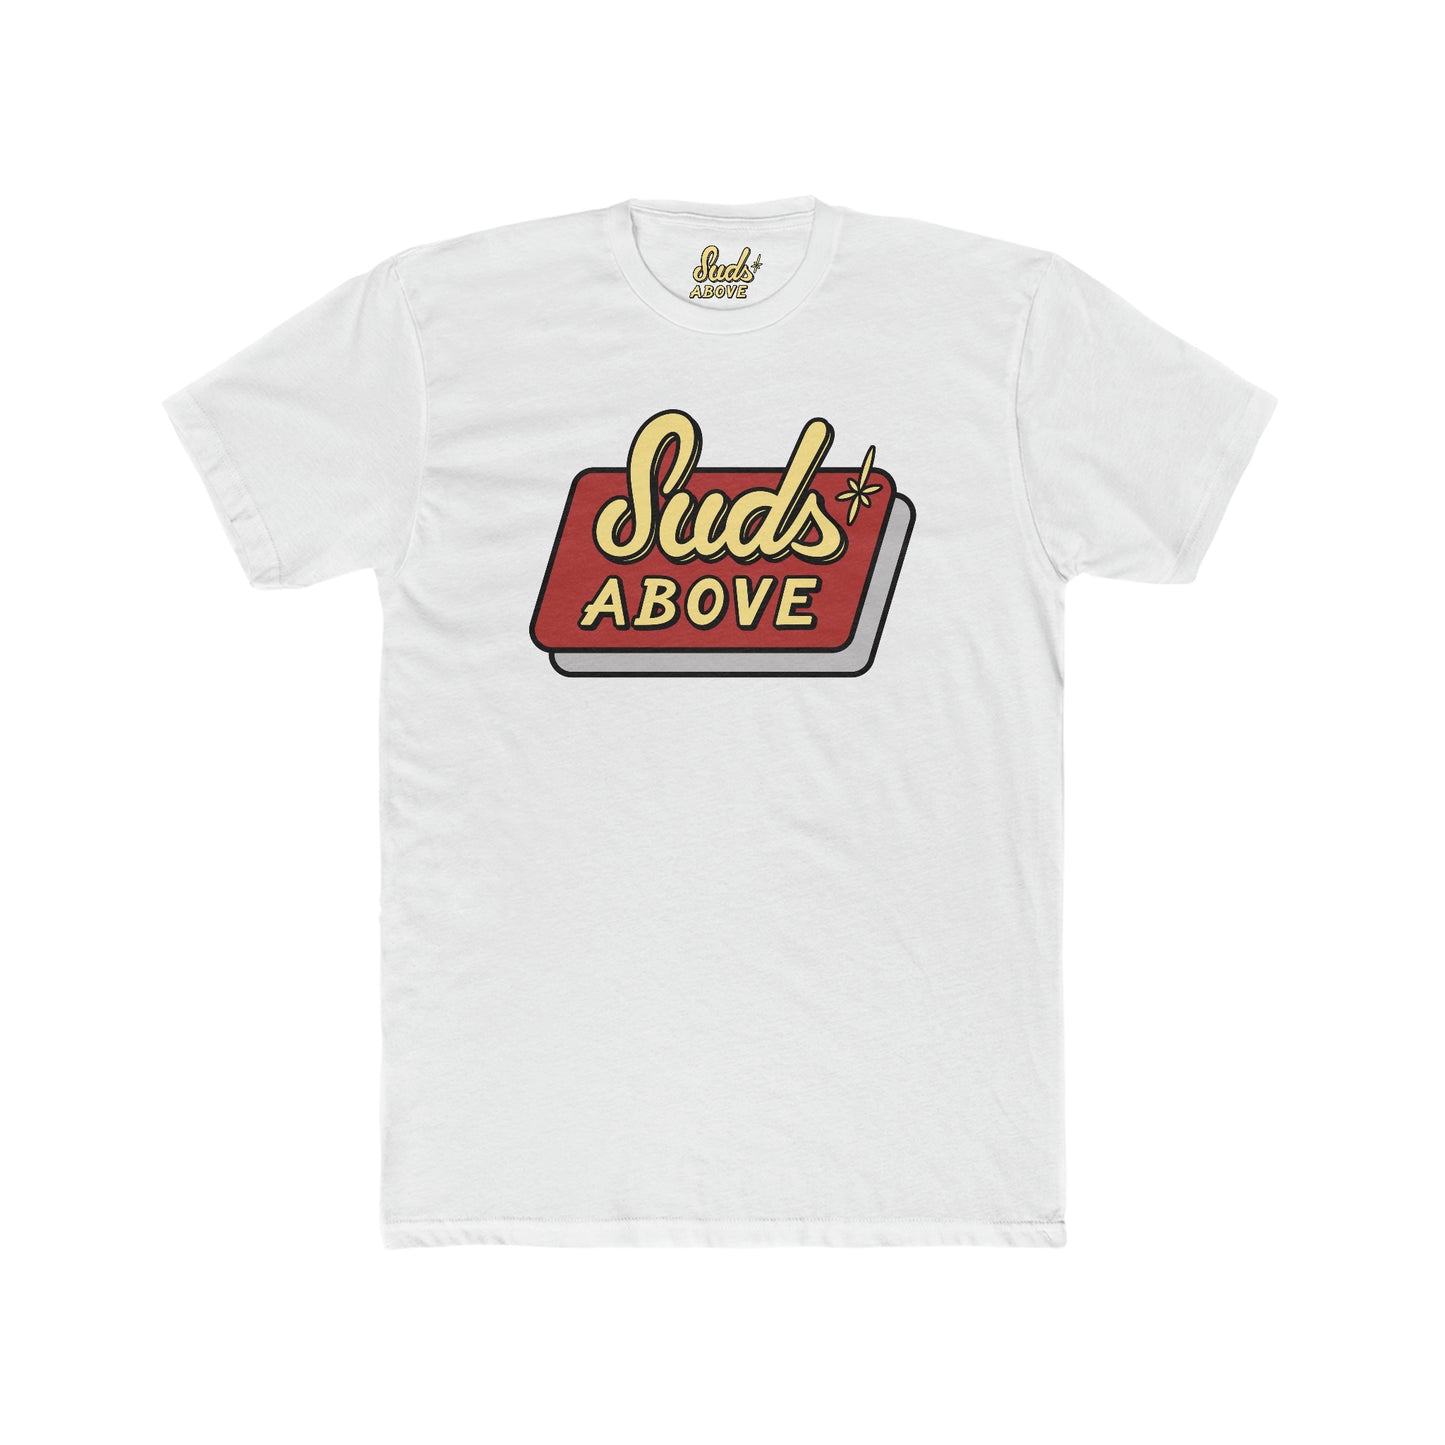 Suds Above Logo T-Shirt